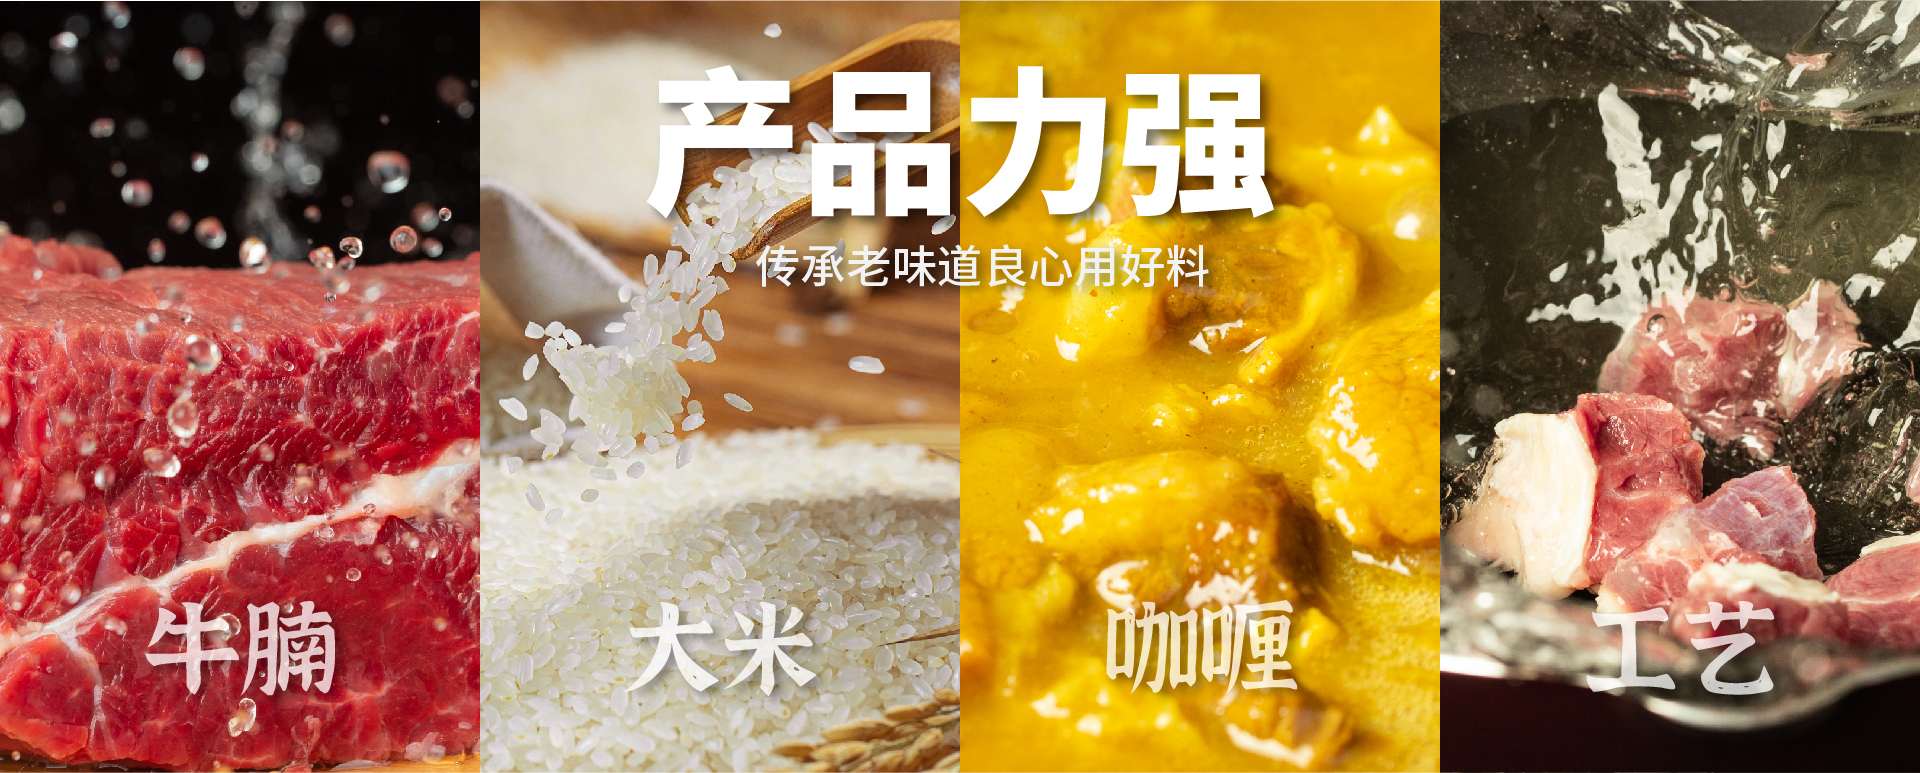 杭州牛腩饭品牌